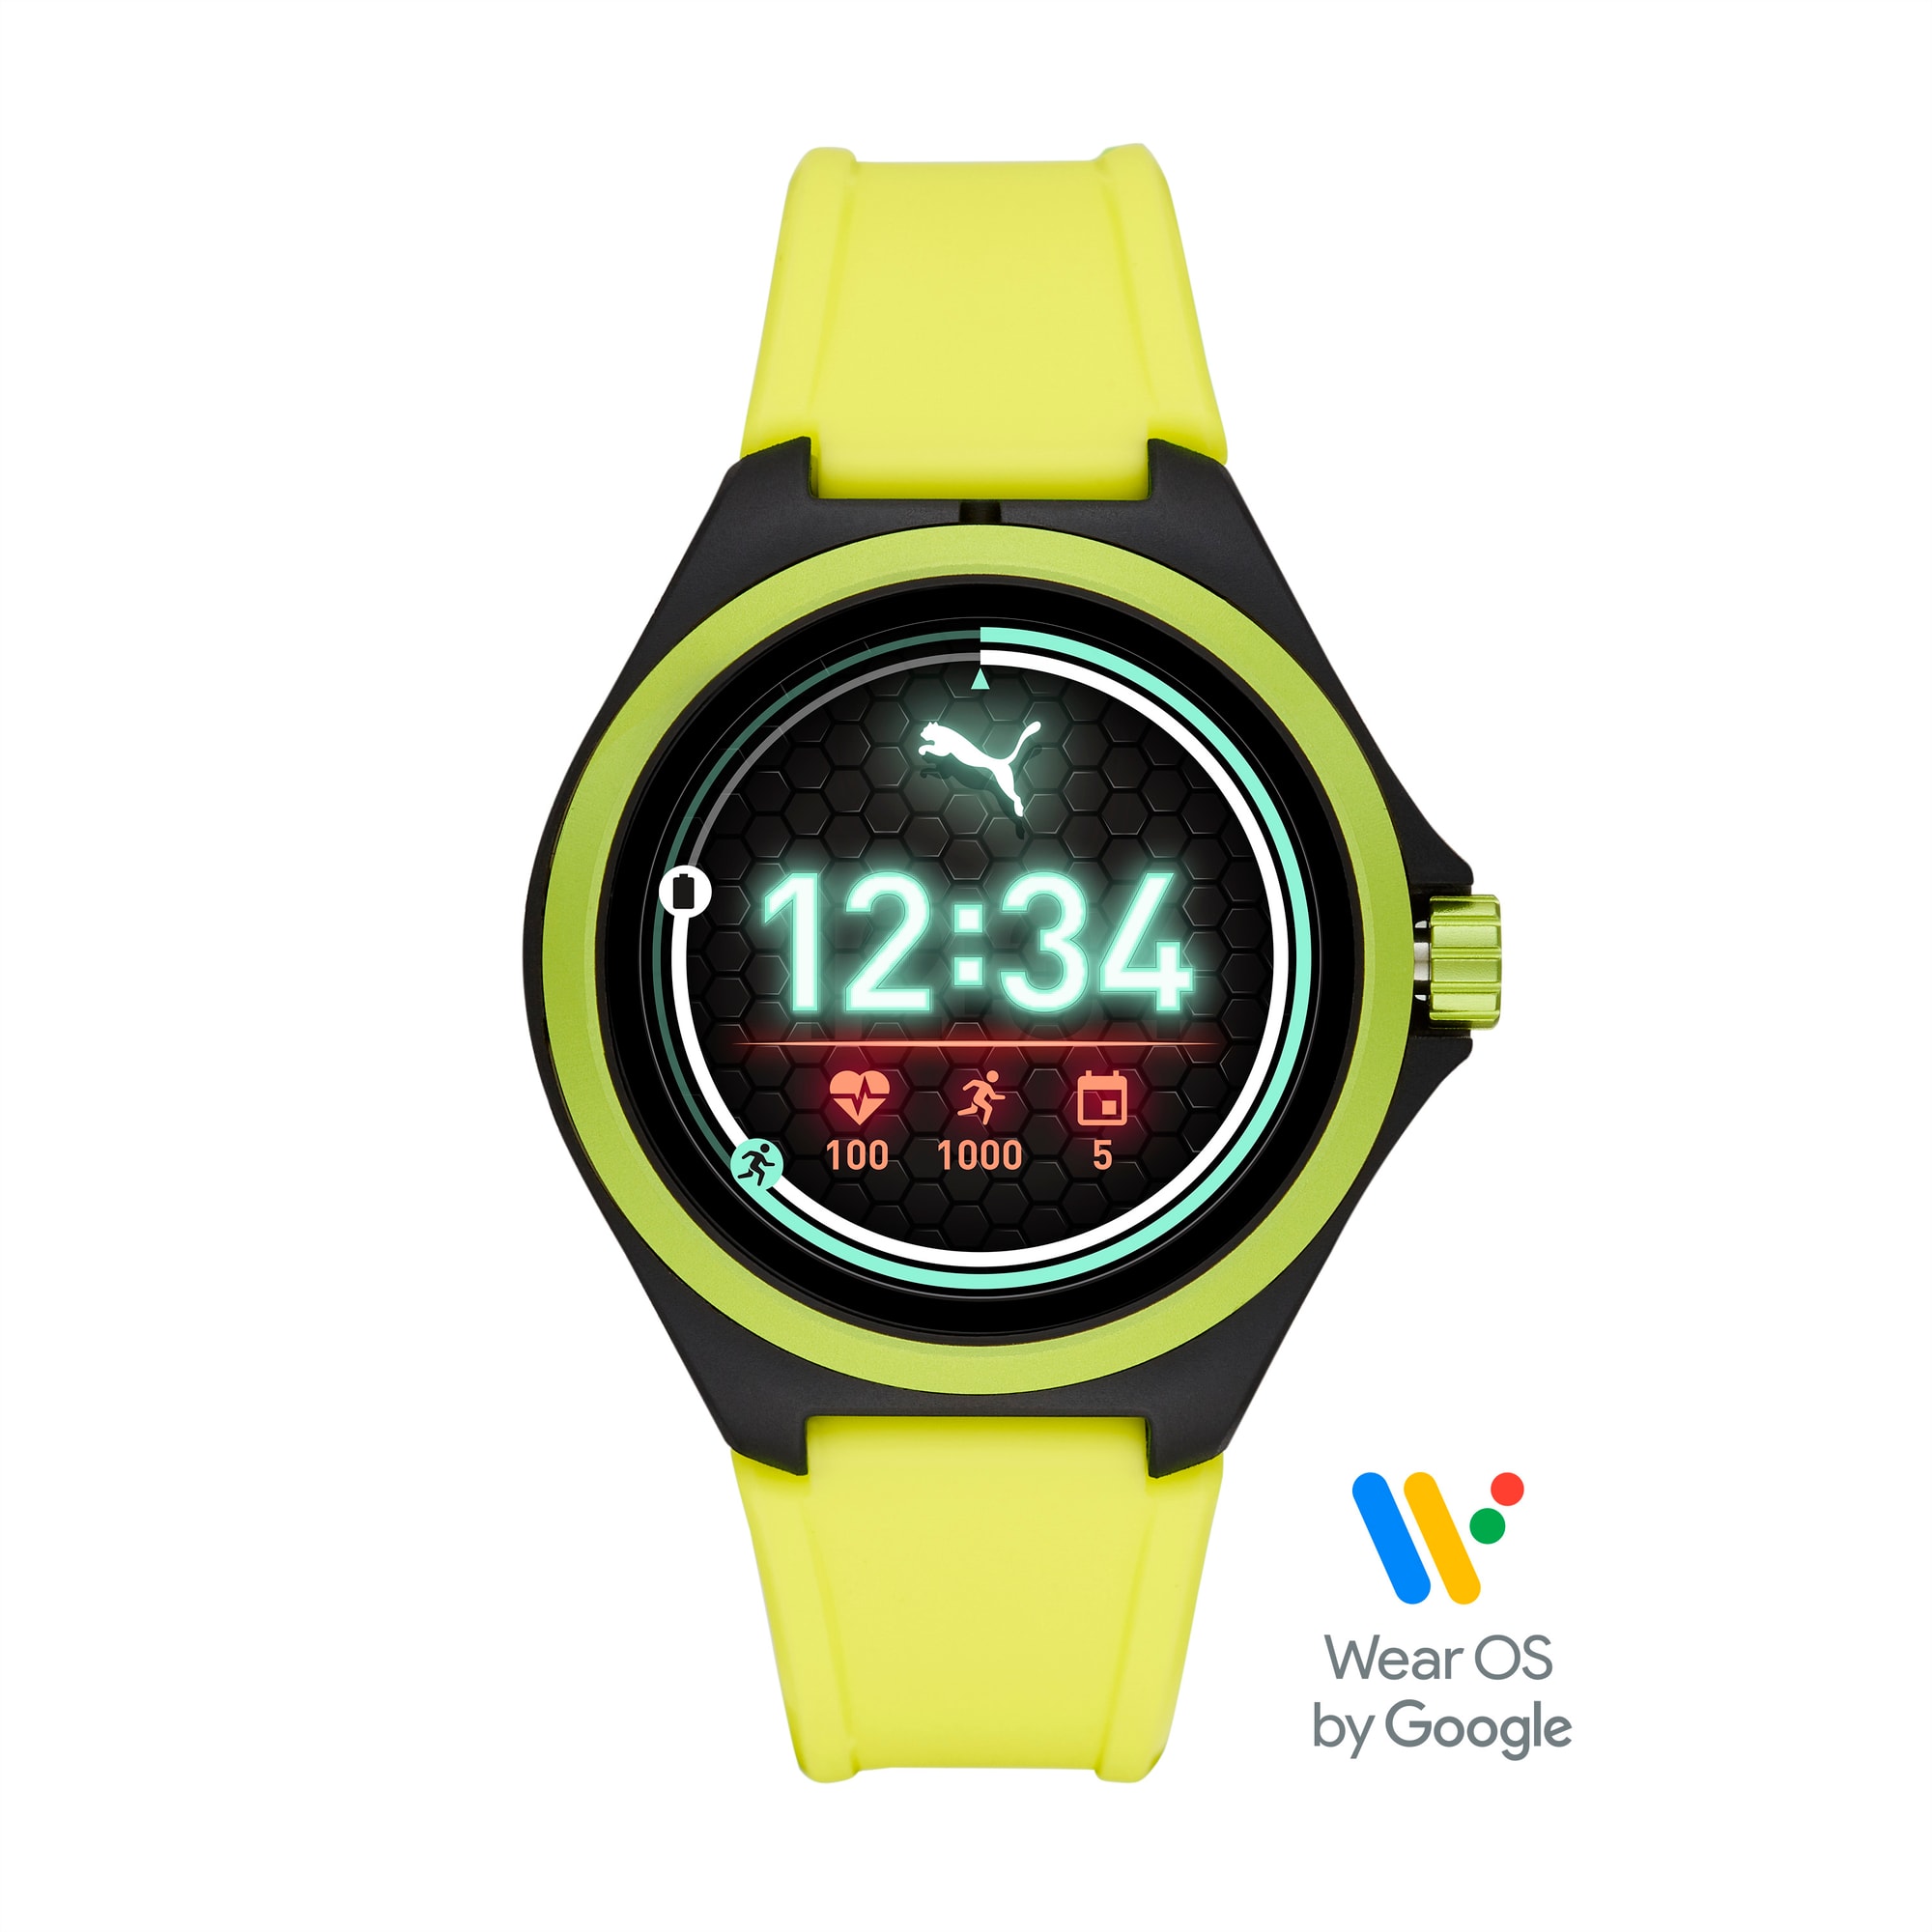 Montre Smartwatch PUMA Gen 4 Heart Rate (jaune), Jaune/Noir, Taille 42mm, Accessoires